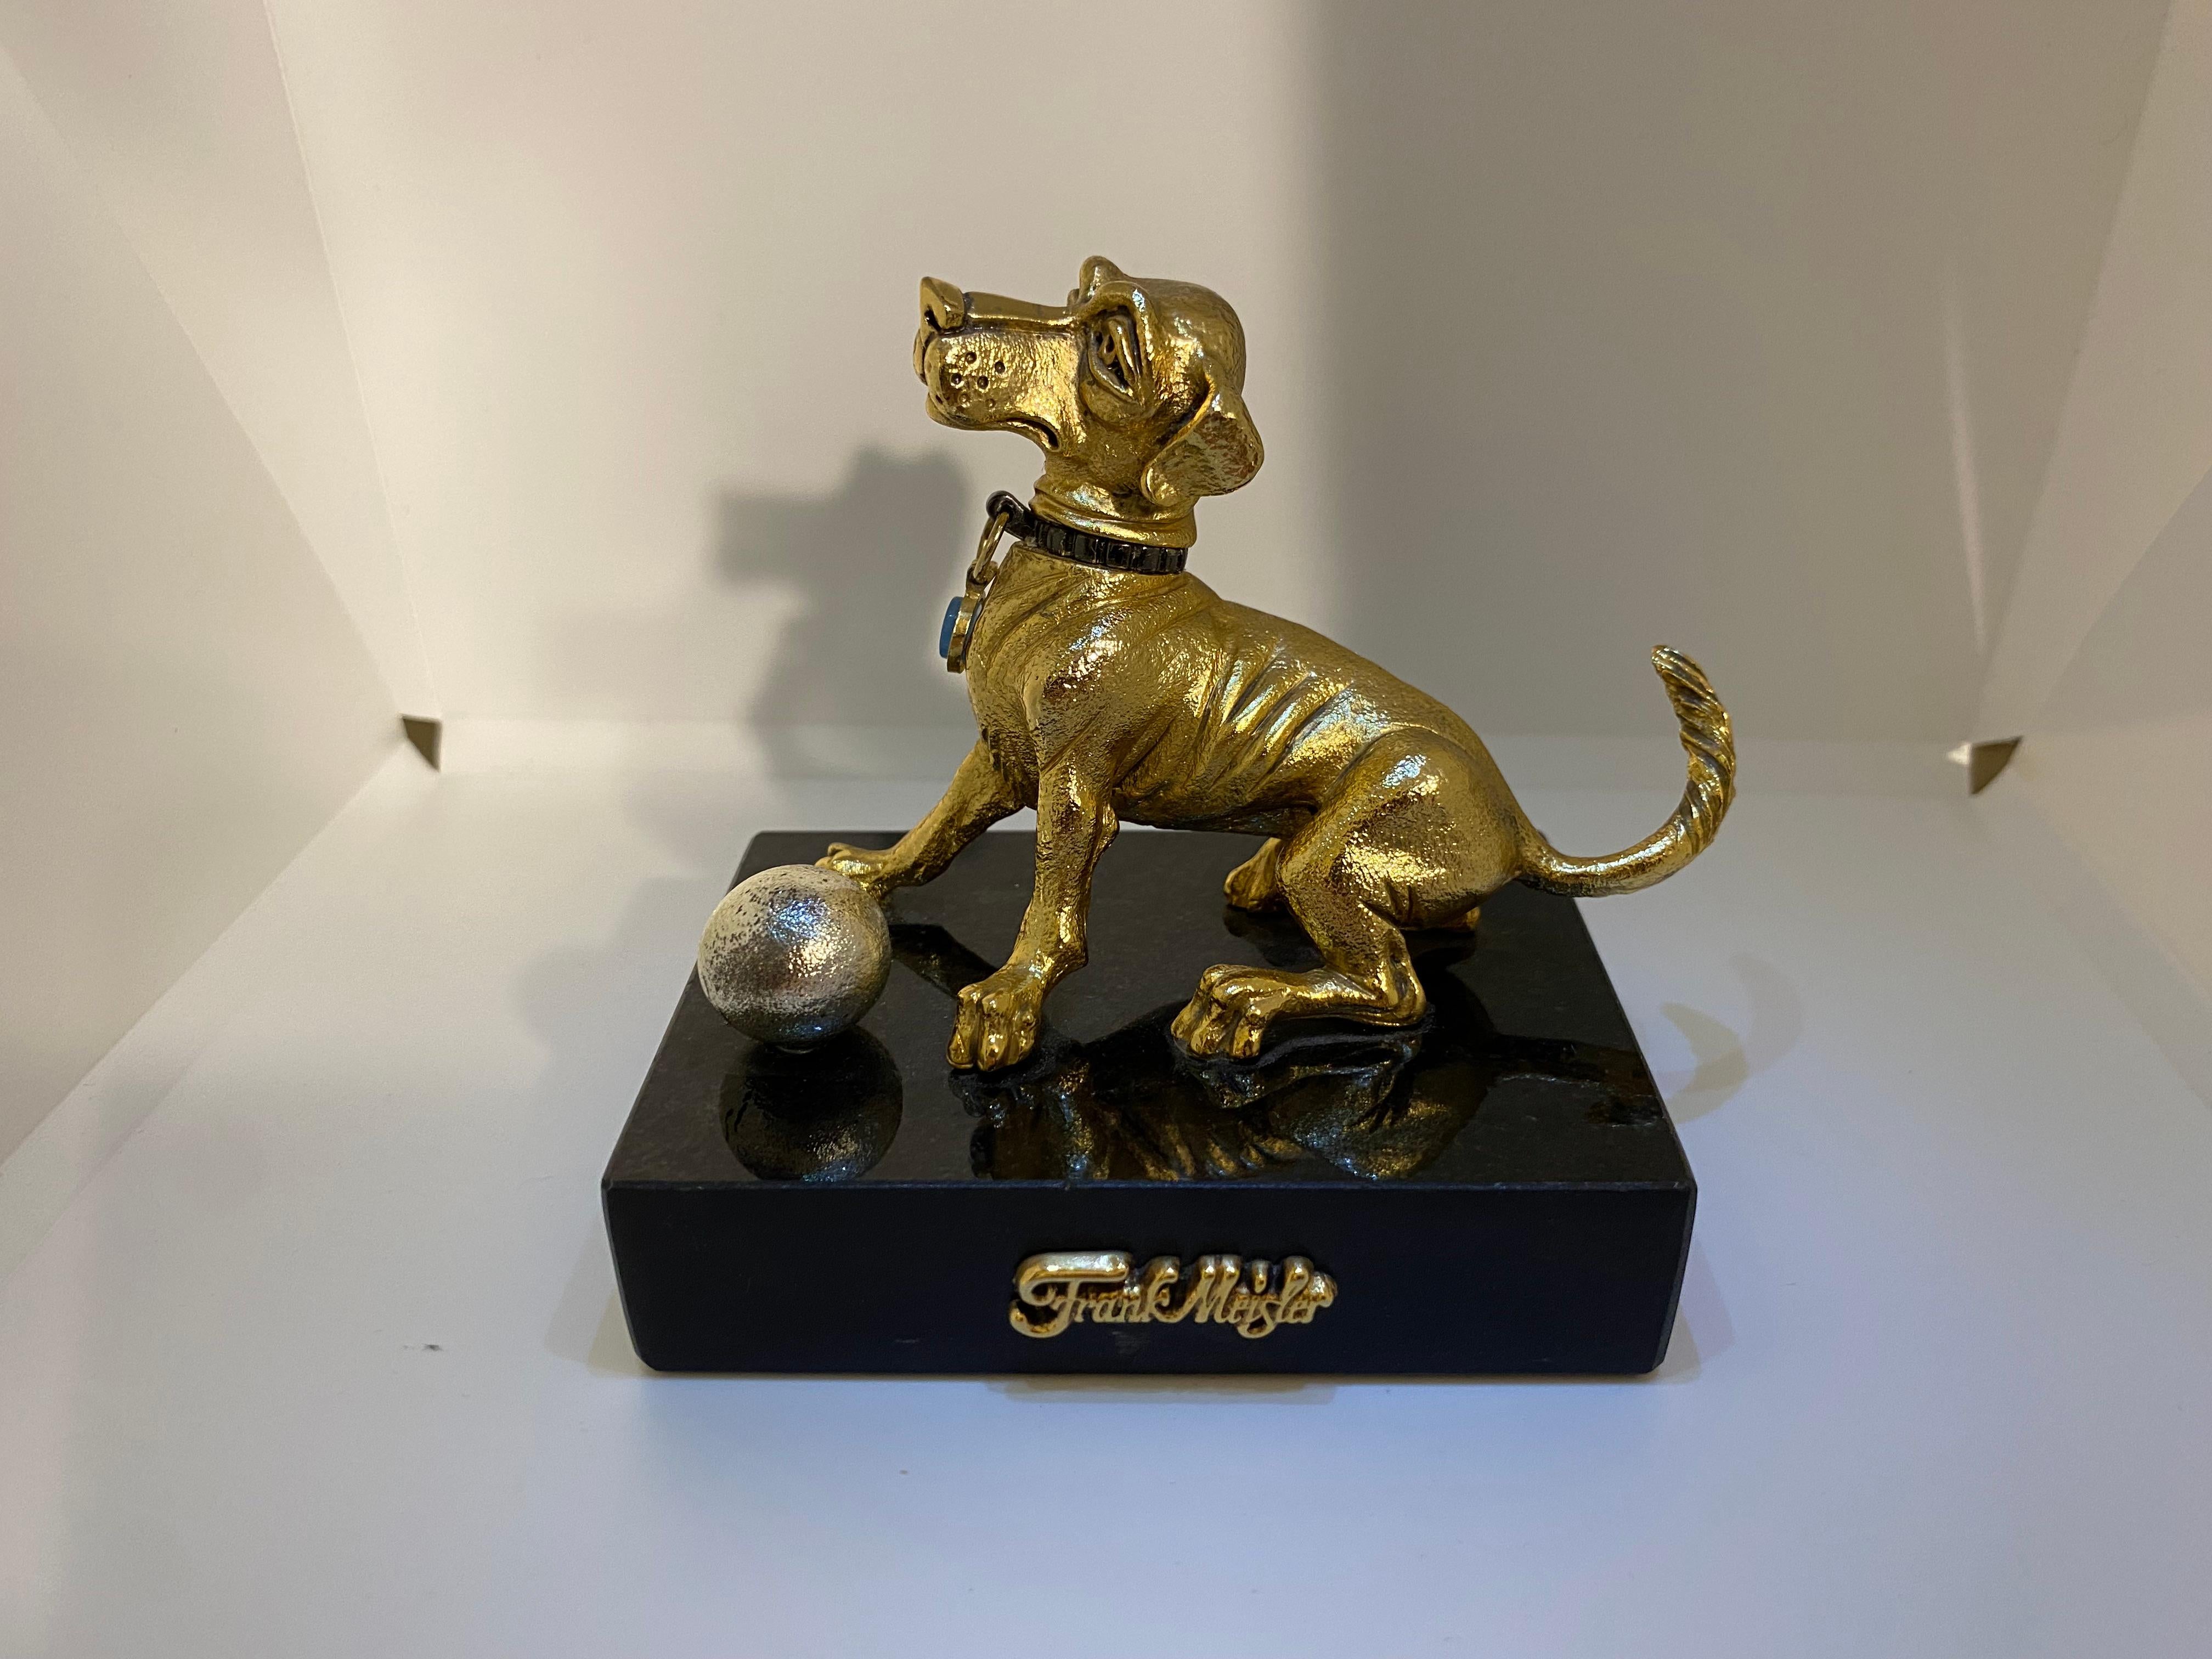 FRANK MEISLER MINI GOLD HUND
H9 x W9 x L6 cm – 560g
Der Hund sitzt mit einem Ball. Der Kopf des Hundes dreht sich zur Seite. Handgefertigt. Limitierte Auflage. Metalllegierungen mit vergoldeten und versilberten Elementen. 